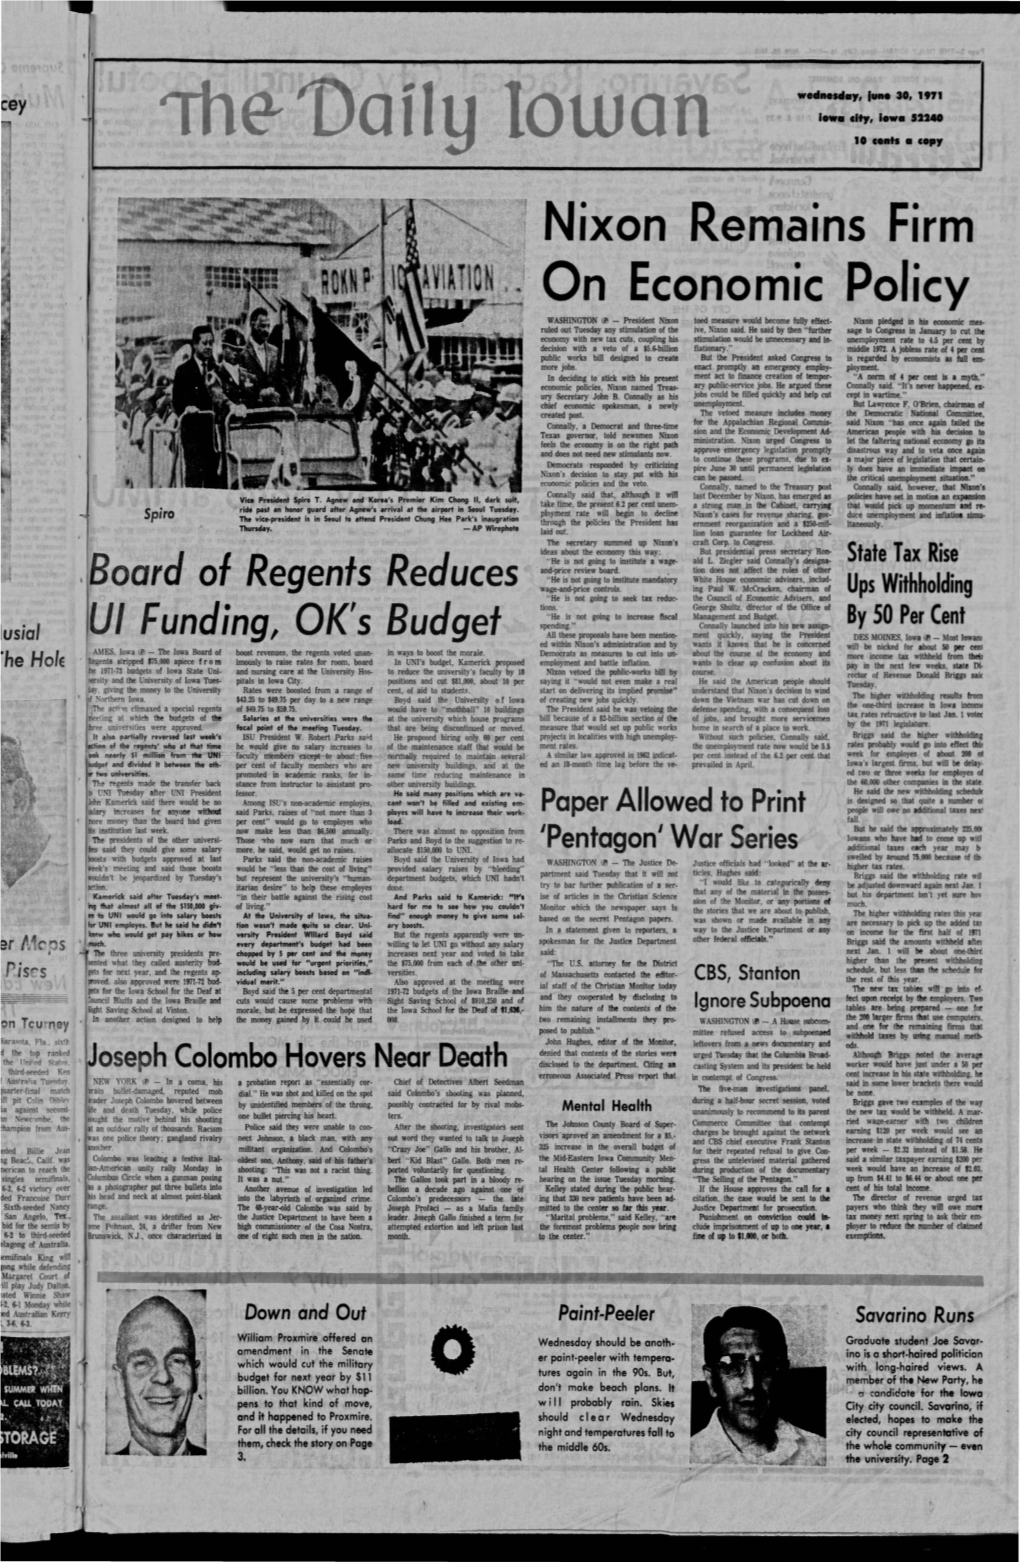 Daily Iowan (Iowa City, Iowa), 1971-06-30